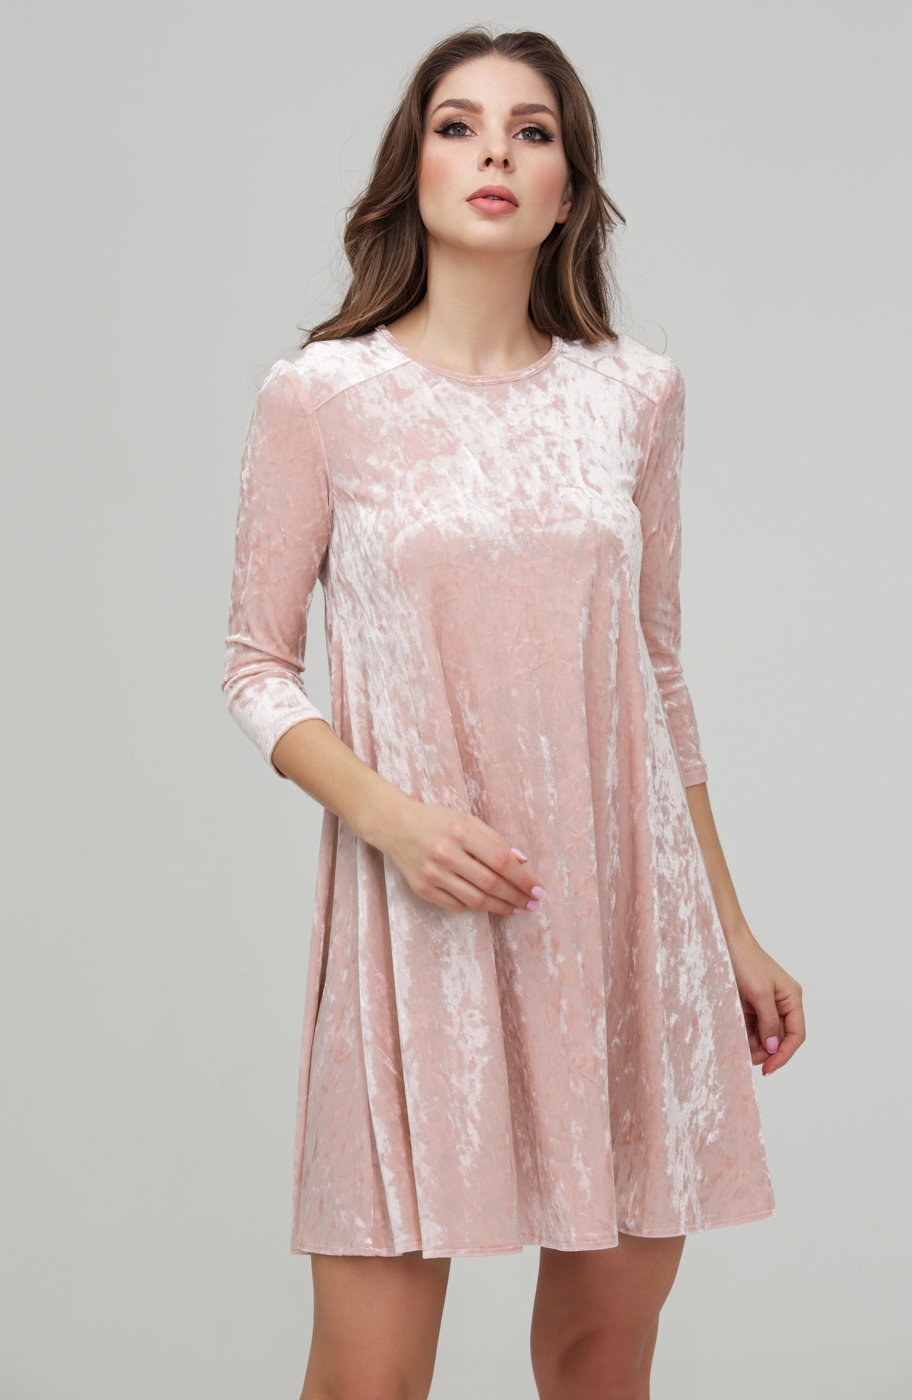 Коктейльное розовое платье из бархата DSP-271-80t купить в интернет-магазине latrendo.ru